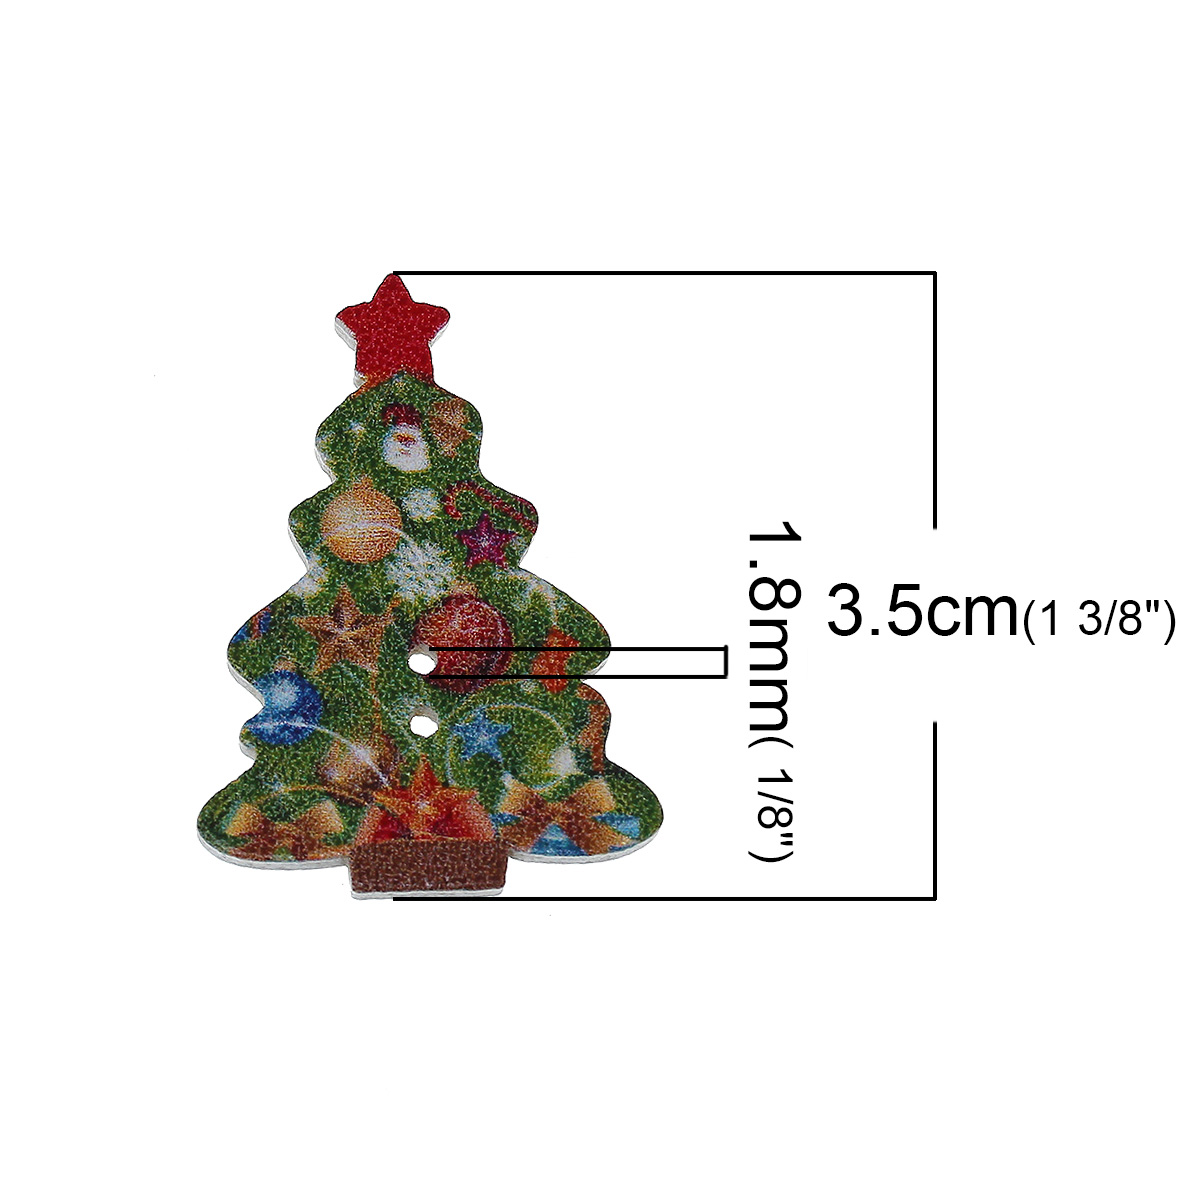 Imagen de Botón Dos Agujeros Costura Madera de Árbol de Navidad ,Al Azar 35mm x 25mm, 50 Unidades